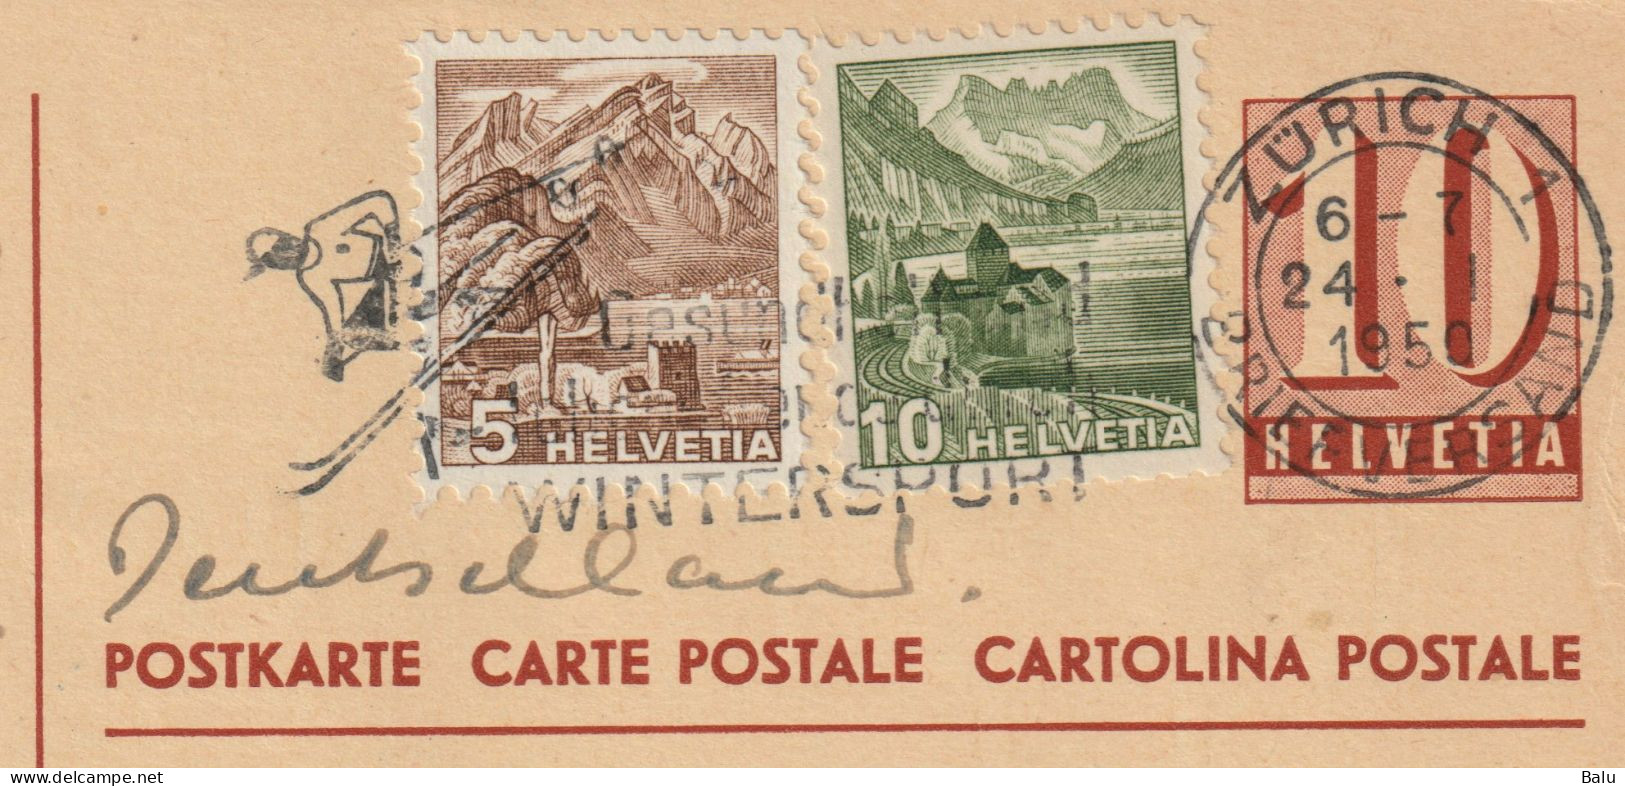 Schweiz 2 Ganzsachen Postkarten Ziffer 10 C. Zürich 1950 Mit Je 2 Zusatzfrankaturen 5 + 10c., 3 Scans, Entier Postal - Postwaardestukken